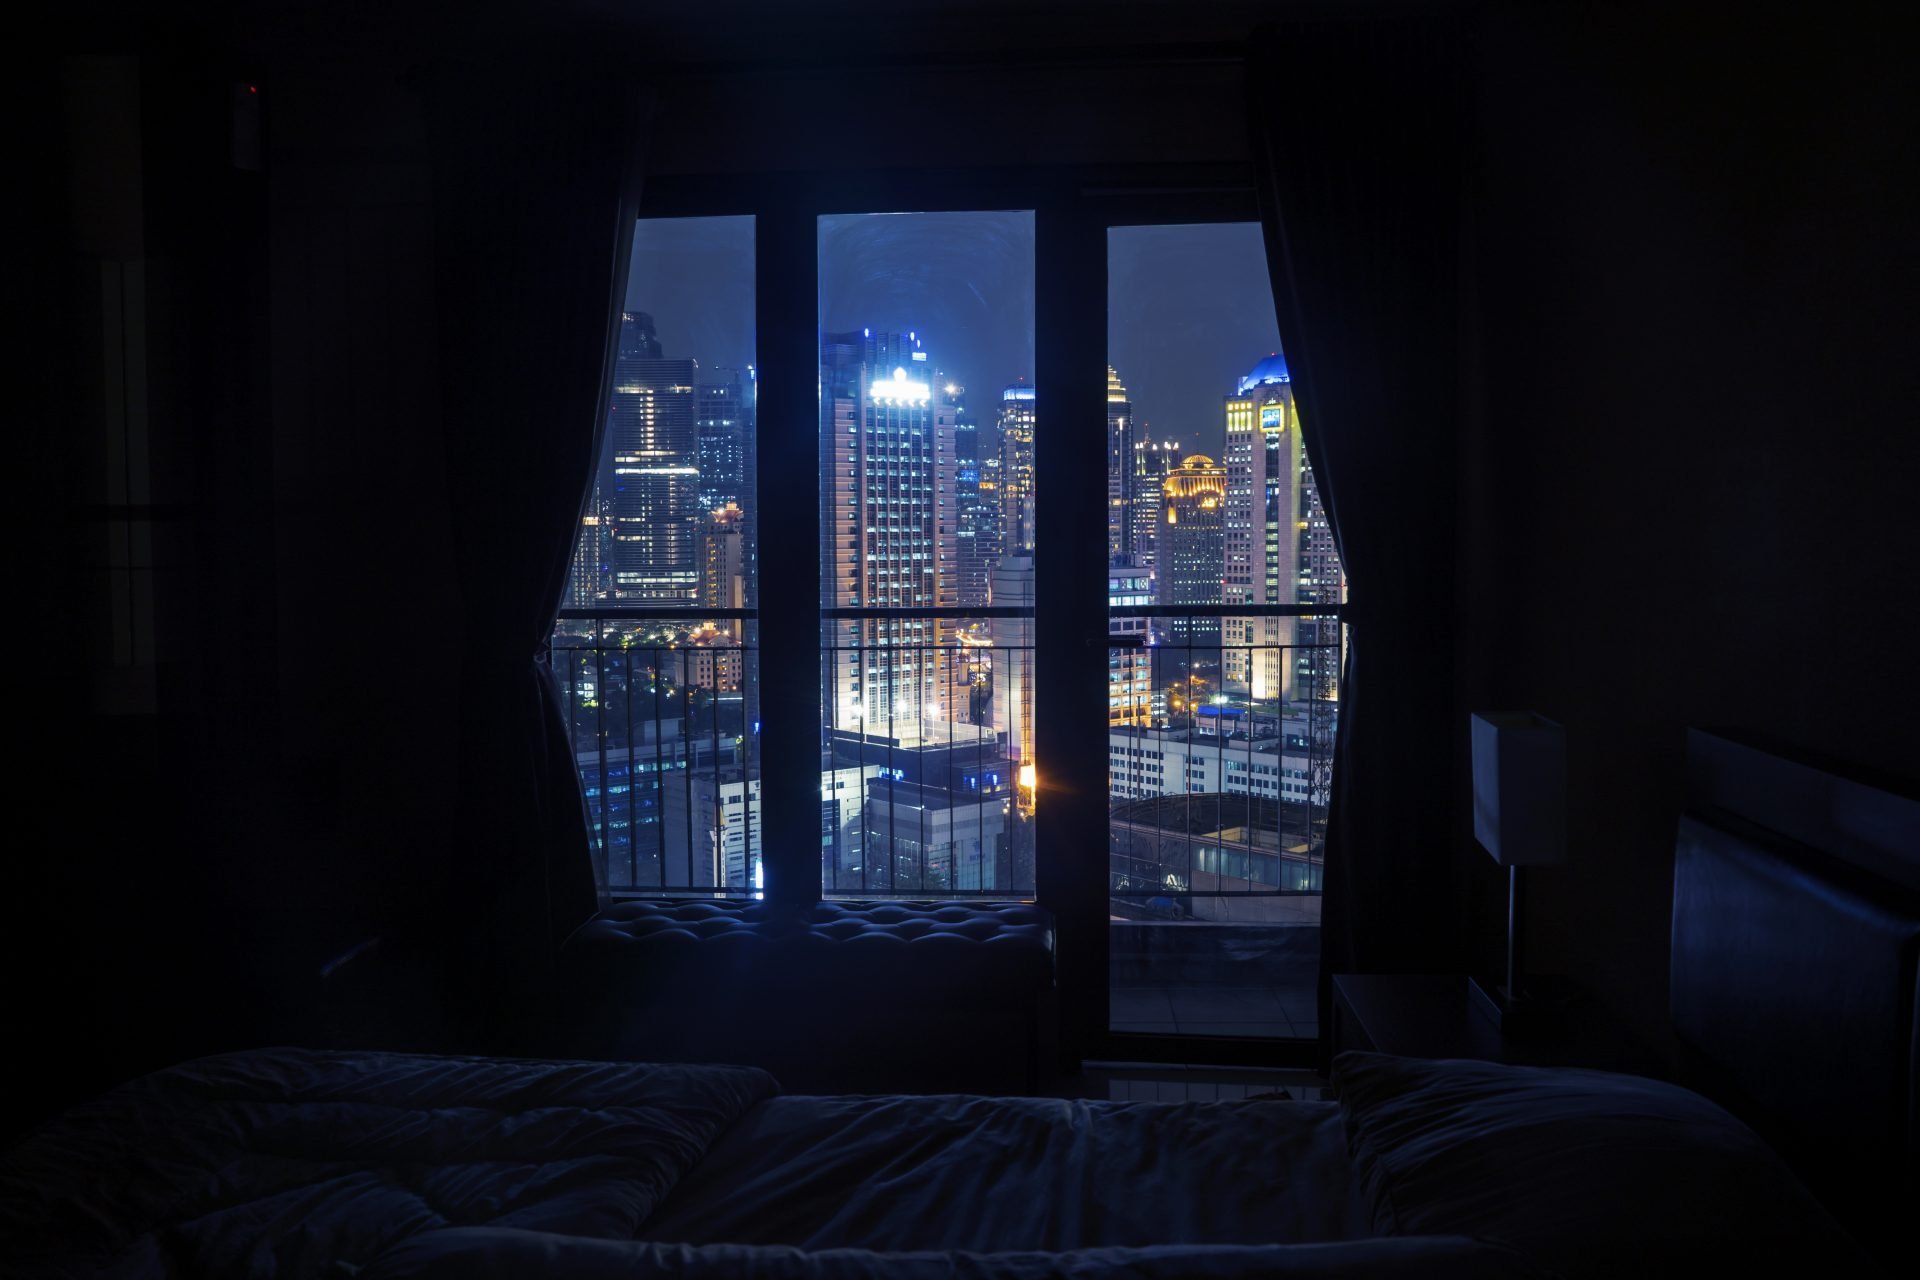 The window last night. Комната с окном ночью. Ночное окно в комнате. Ночная комната с кроватью у окна. Ночной вид из окна.